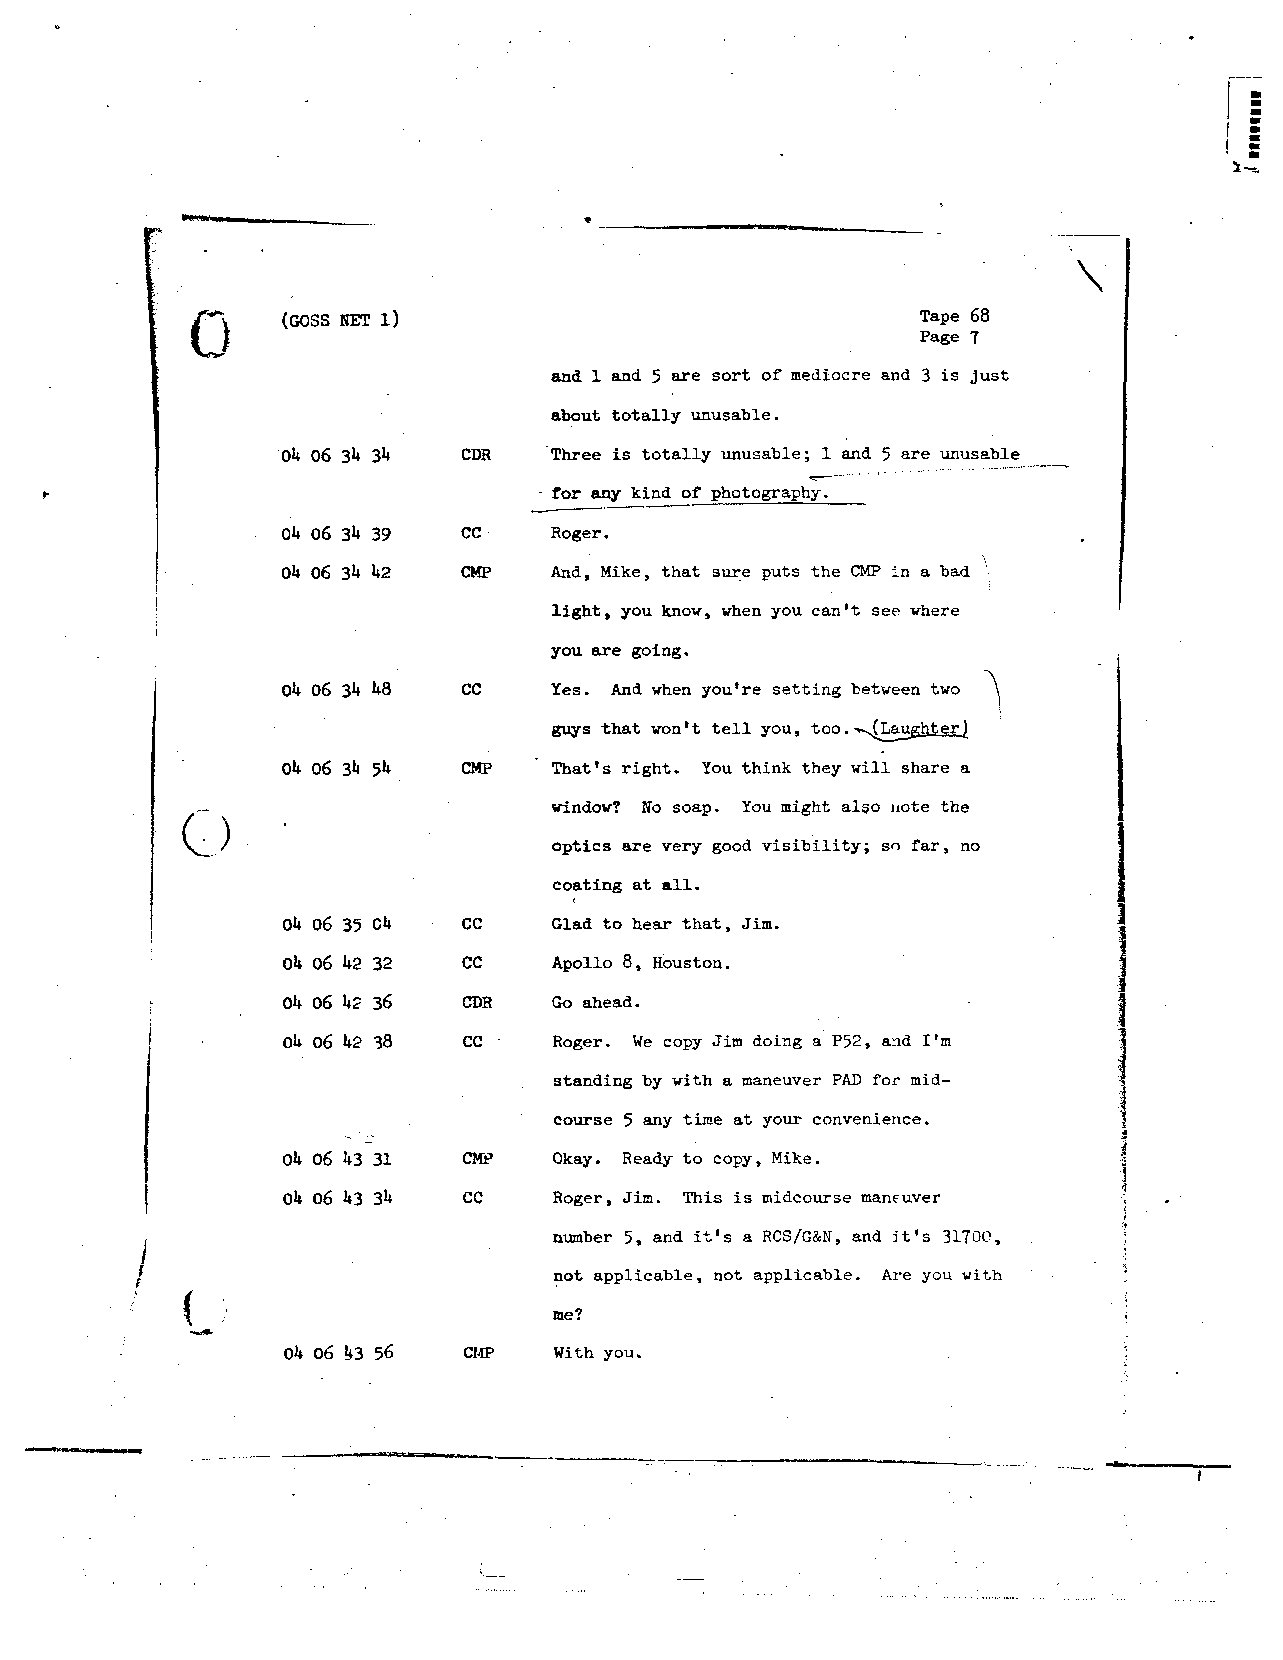 Page 539 of Apollo 8’s original transcript